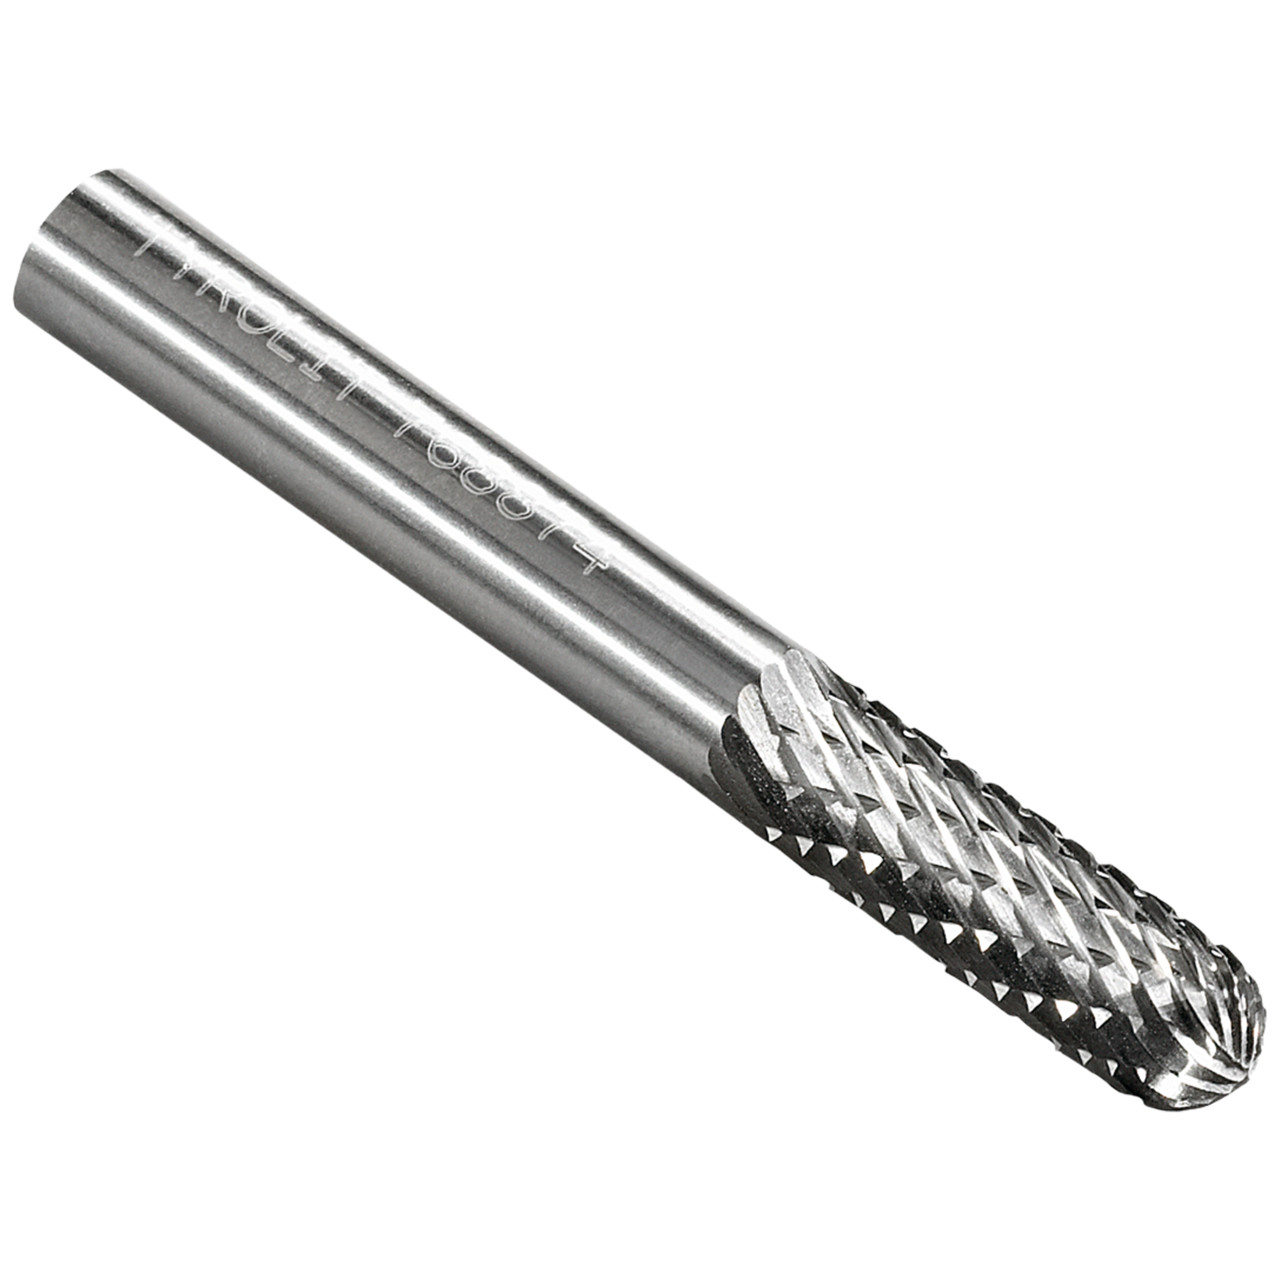 Tyrolit Hardmetalen frees DxT-SxL 6x19-6x50 Voor gietijzer, staal en roestvrij staal, vorm: 52WRC - cilindrisch, Art. 768874